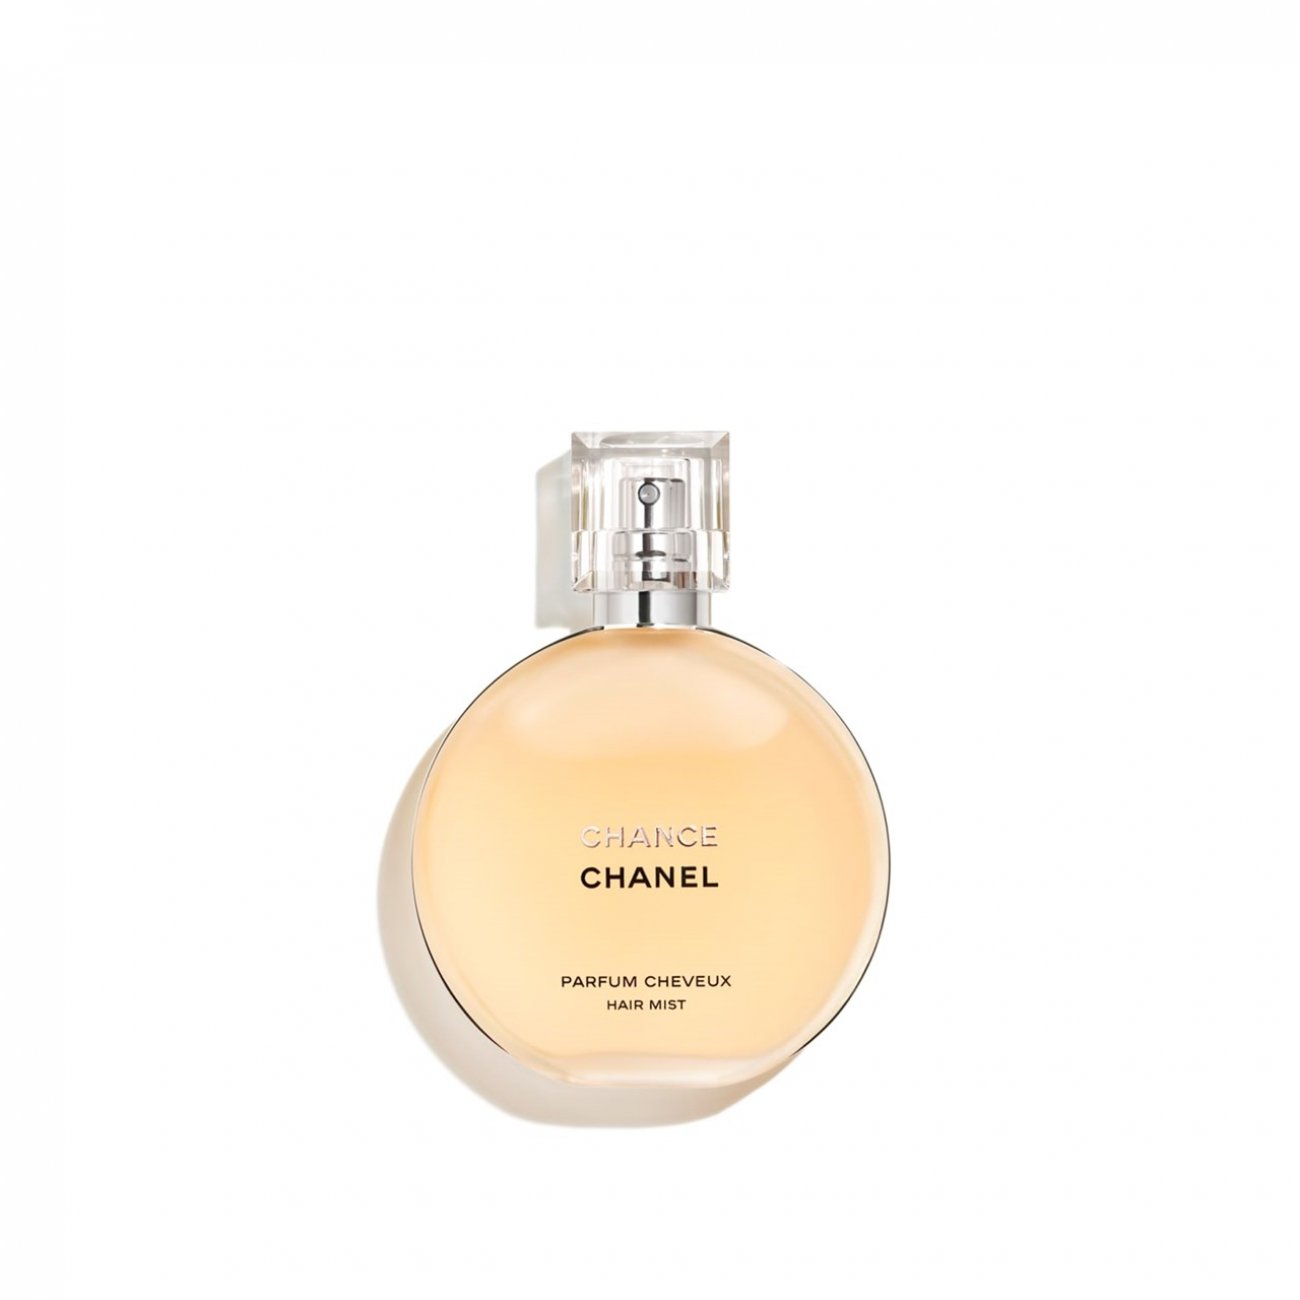 NƯỚC HOA CHANEL CHANCE EAU DE PARFUM HỒNG 100ML  DN Cosmetics  1 Mỹ Phẩm  chính hãng chất lượng số 1 Đà Nẵng